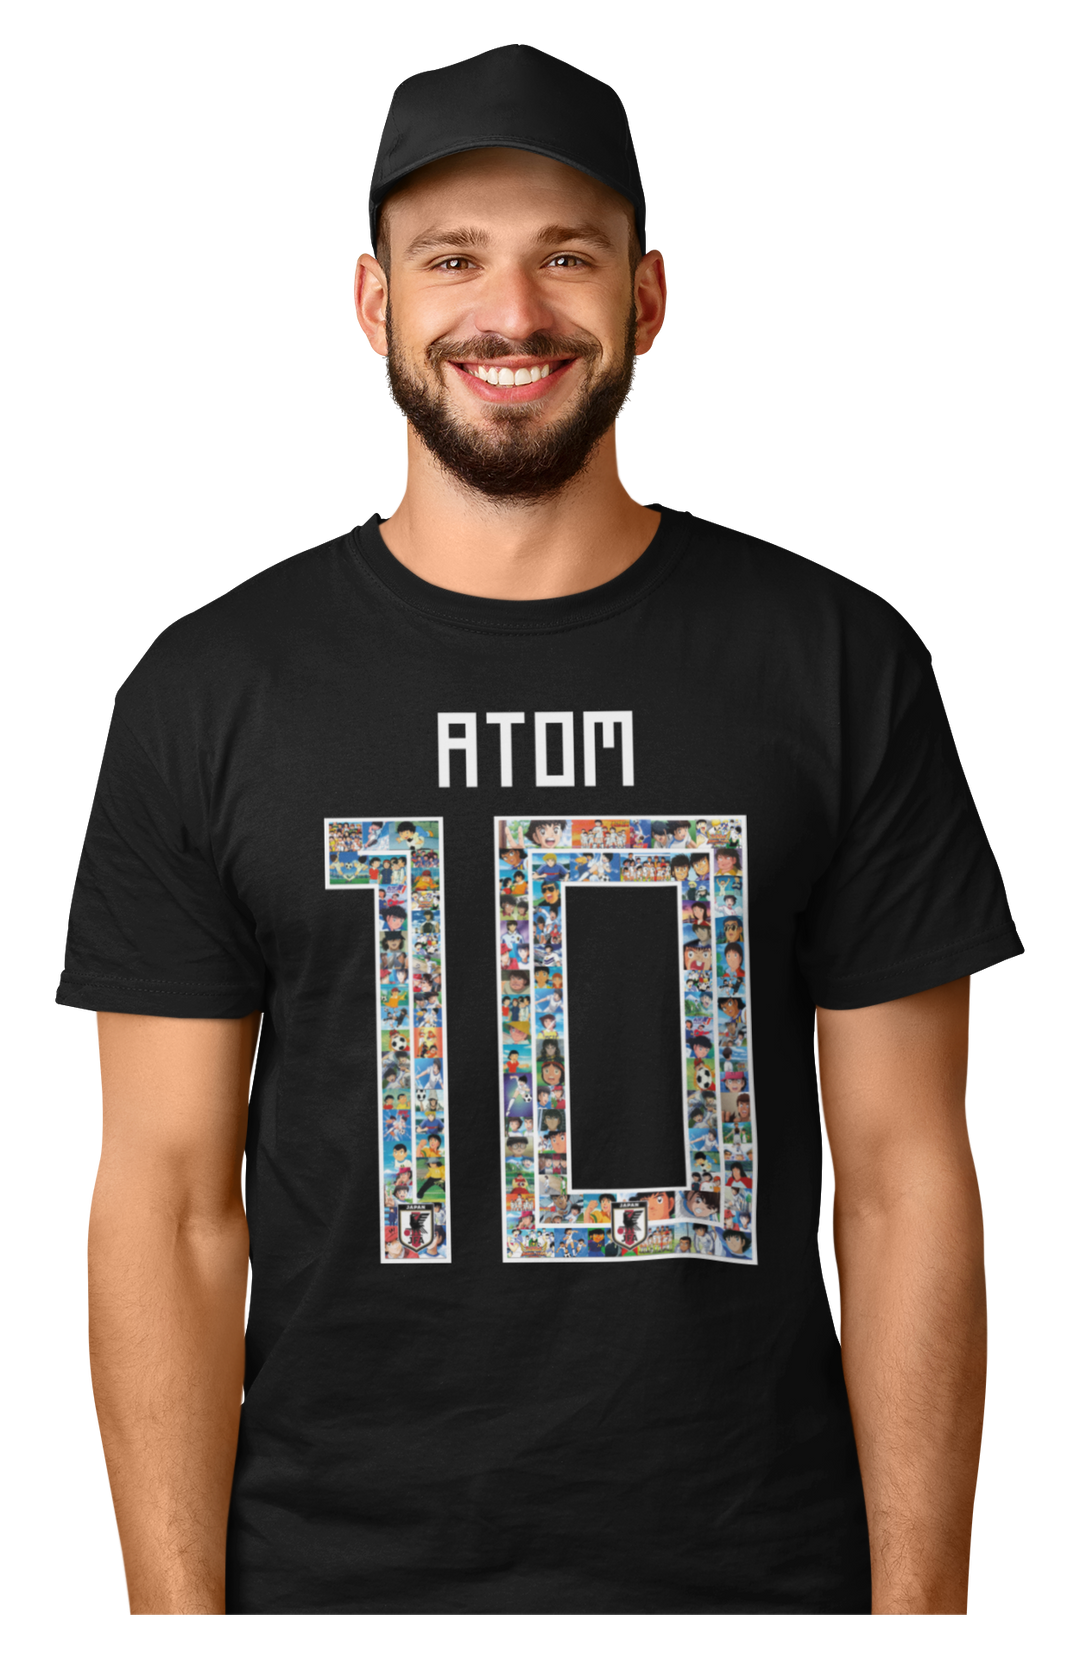 Super Campeones - Atom